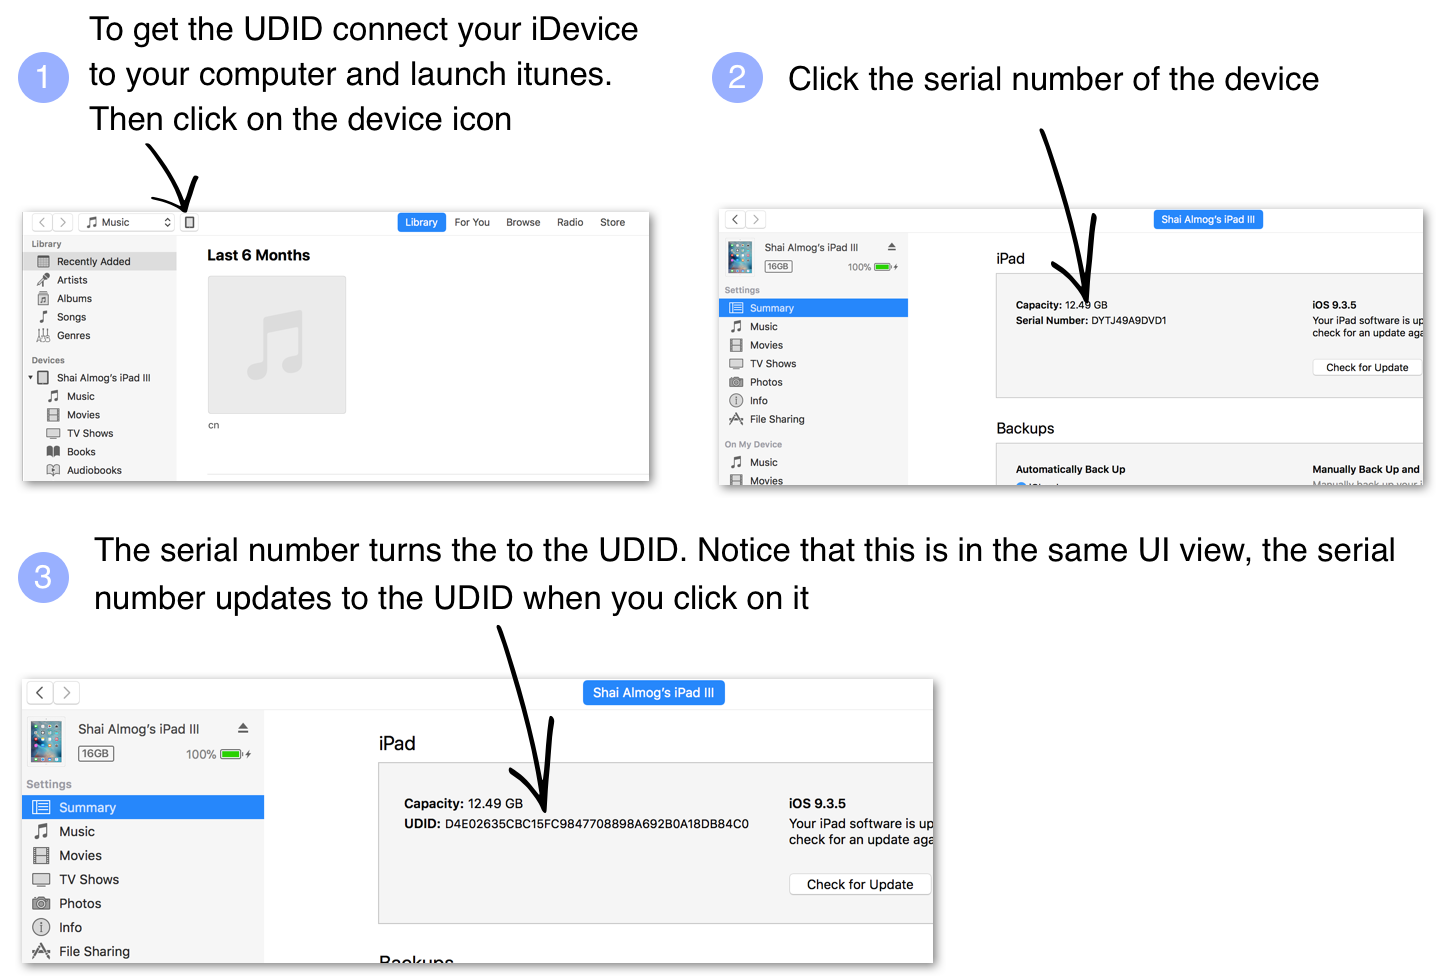 iMusic: Music Player iOS 15 v1.0.1 [Premium] APK 